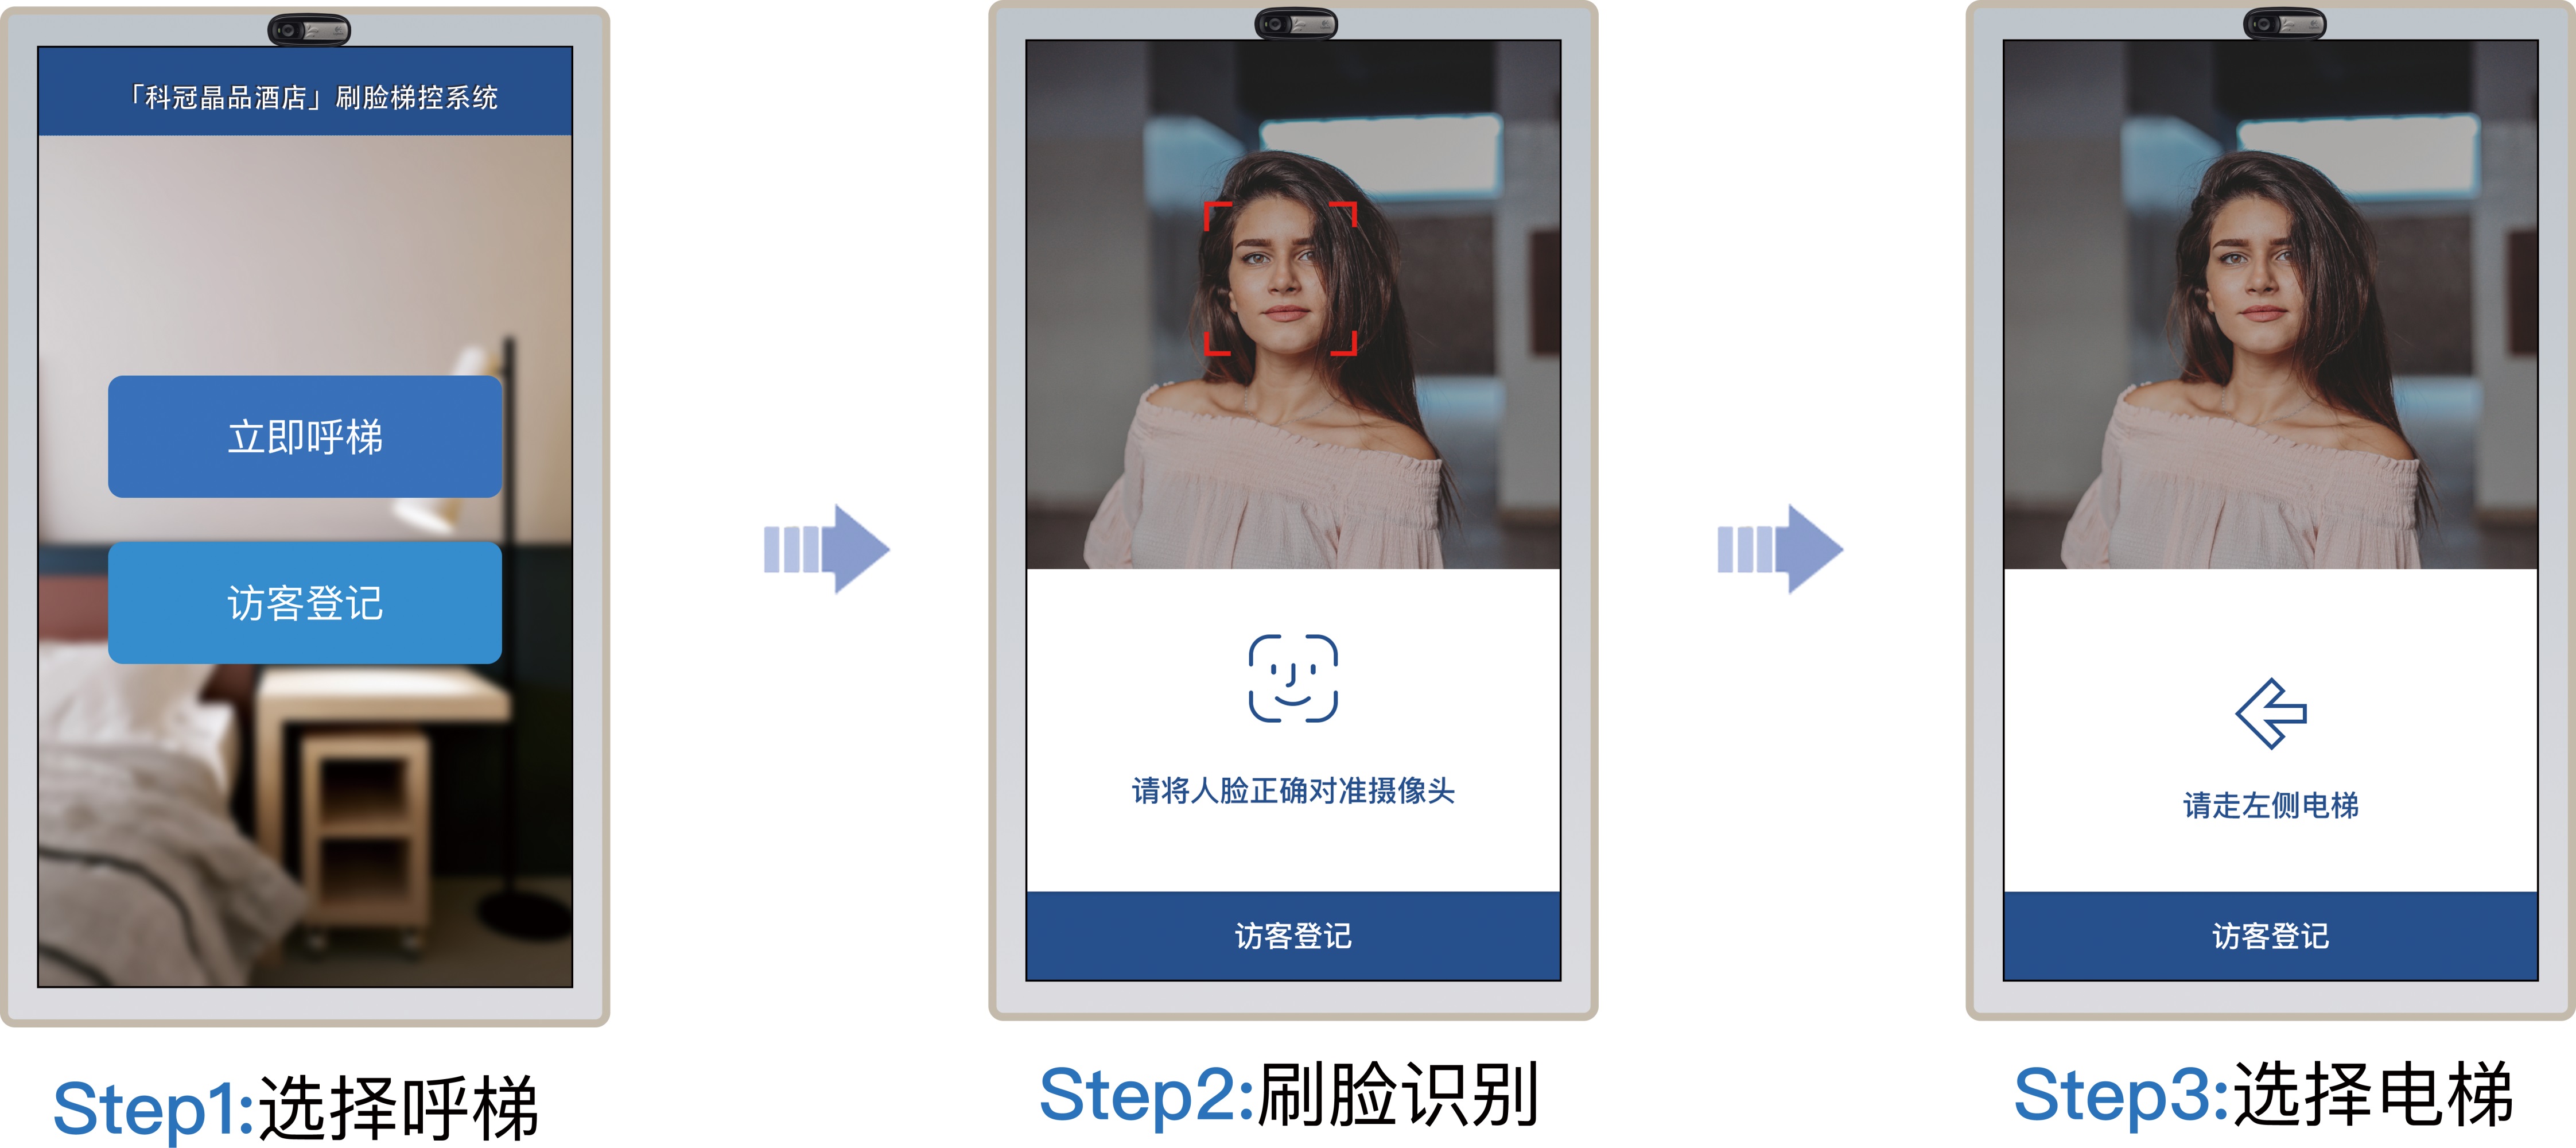 中国公安部试点“刷脸”身份验证防假冒 – 博聞社